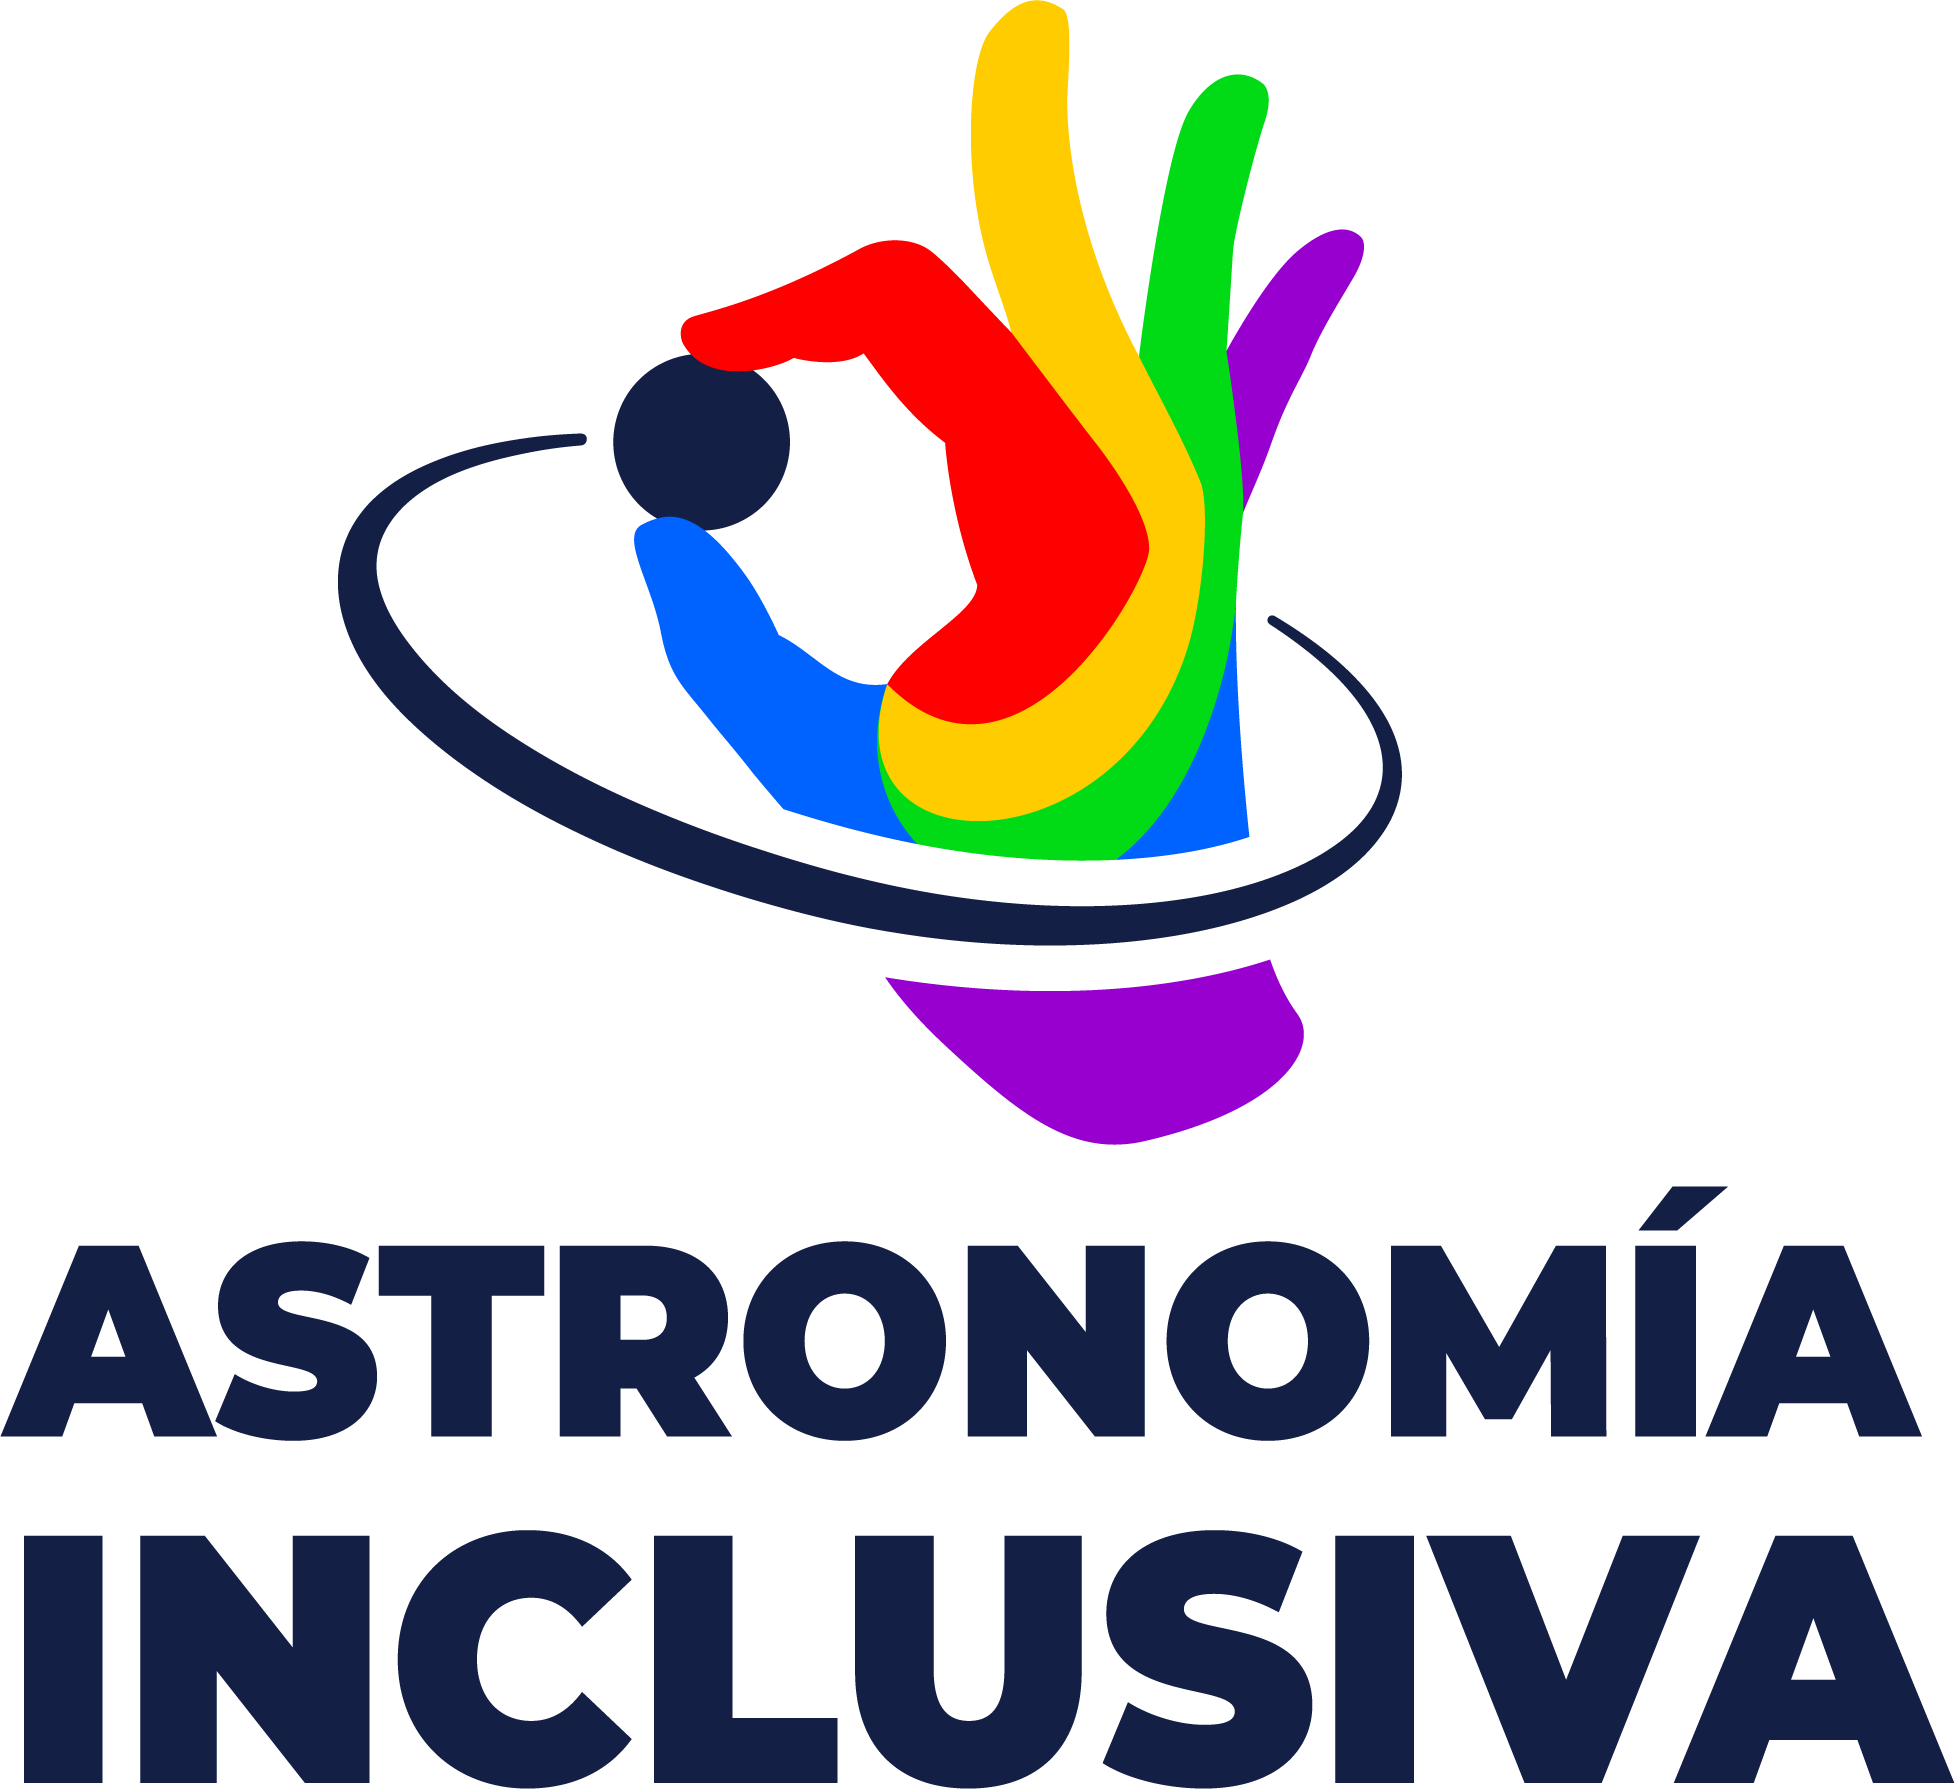 Logo del Grupo de Astronomía inclusiva. Es una mano multicolor, que con el pulgary el dedo índice parece estar tomando una esfera negra, la que tiene parece haber dejado una estela como anillo alrededor de esta mano que la toma. 